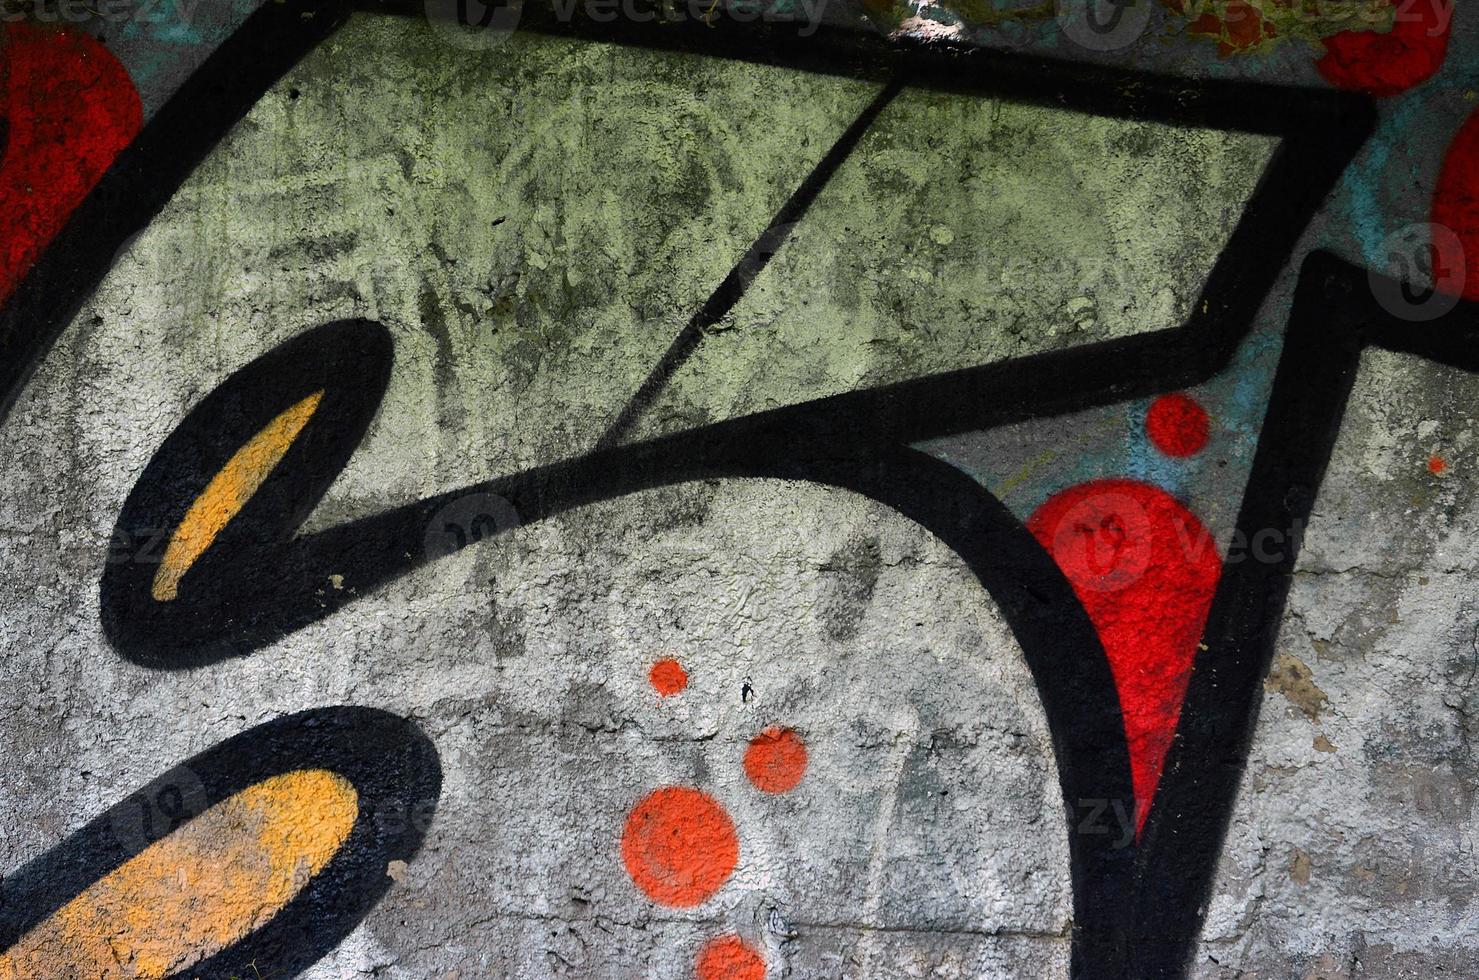 beaux graffitis d'art de rue. couleur abstraite dessin créatif couleurs de mode sur les murs de la ville. culture urbaine contemporaine. peinture de titre sur les murs. protestation des jeunes de la culture photo